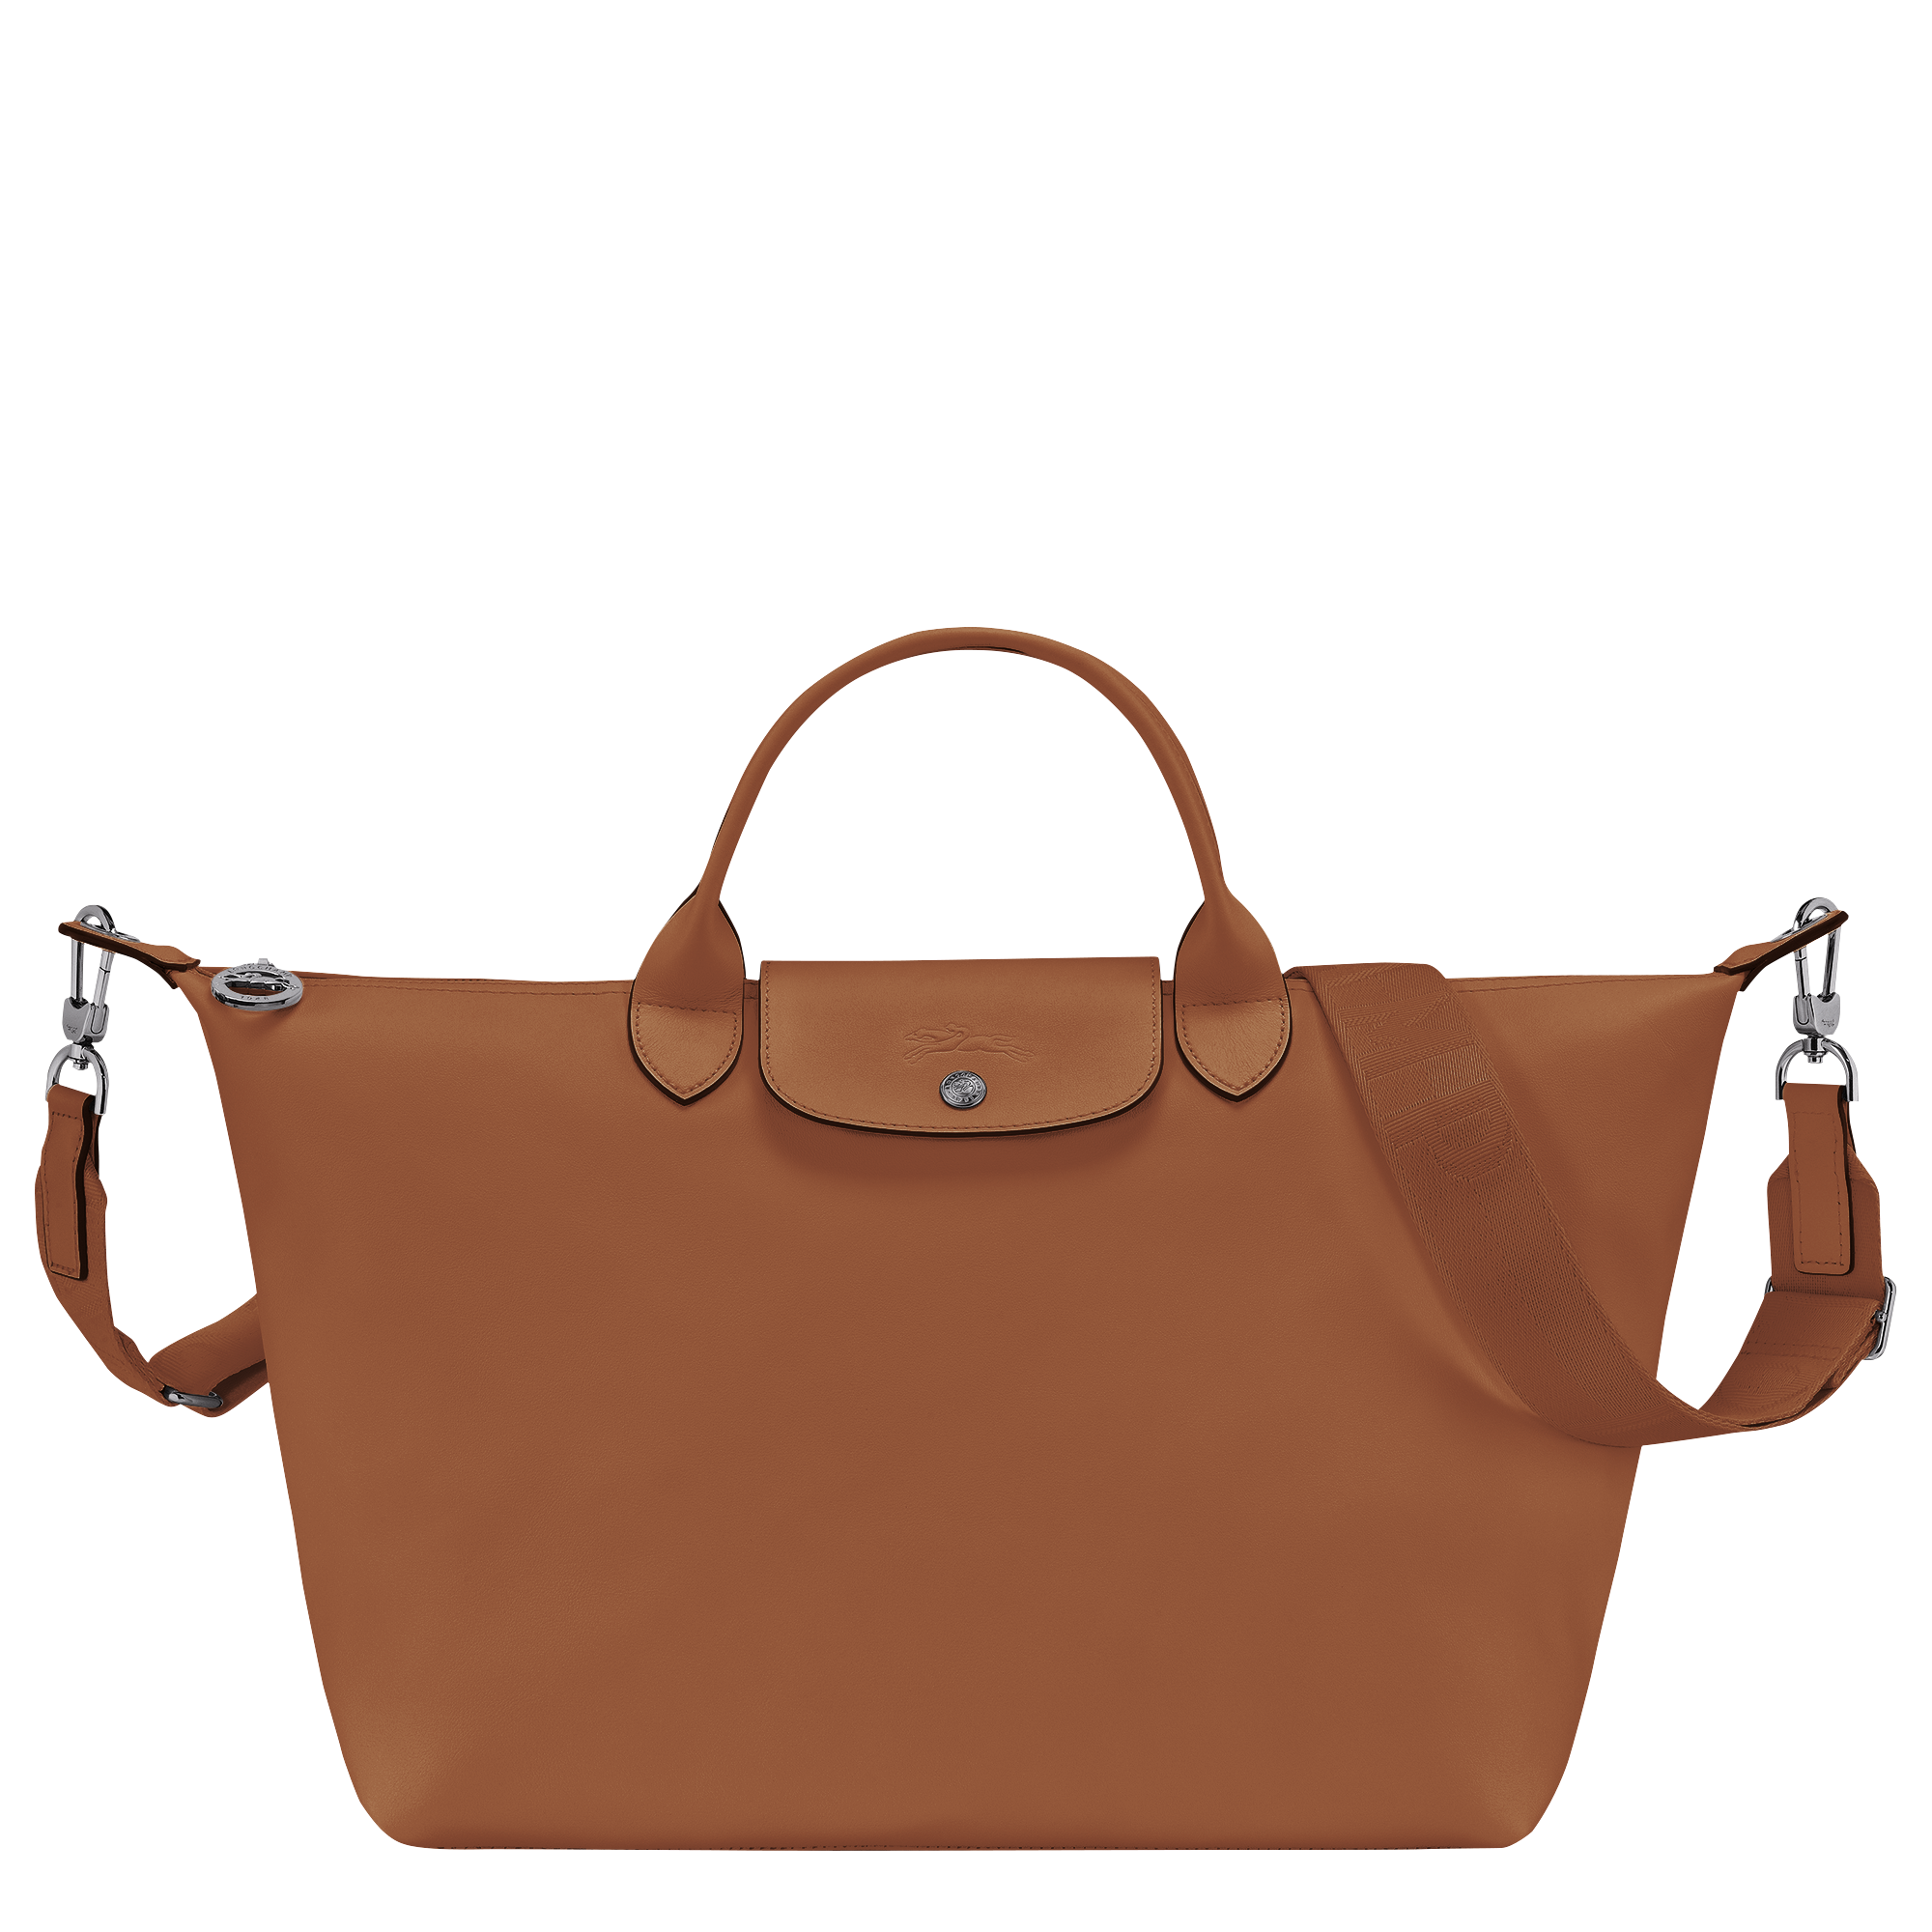 Le Pliage Xtra L Handbag Cognac - Leather | Longchamp US